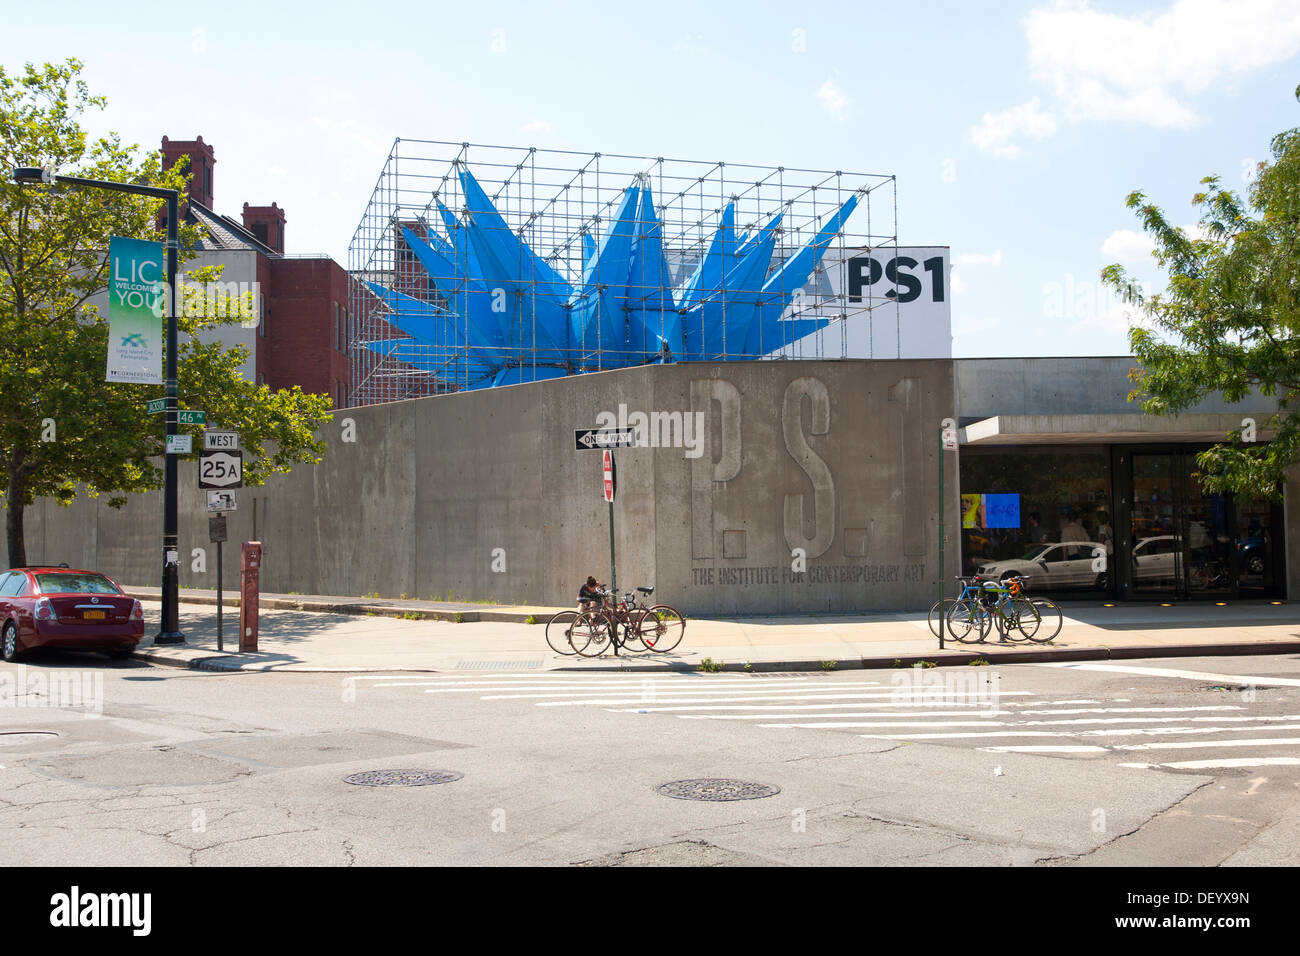 PS1, Institut d'art contemporain, de la direction générale du MoMA, Musée d'Art Moderne, Queens, New York City, USA Banque D'Images